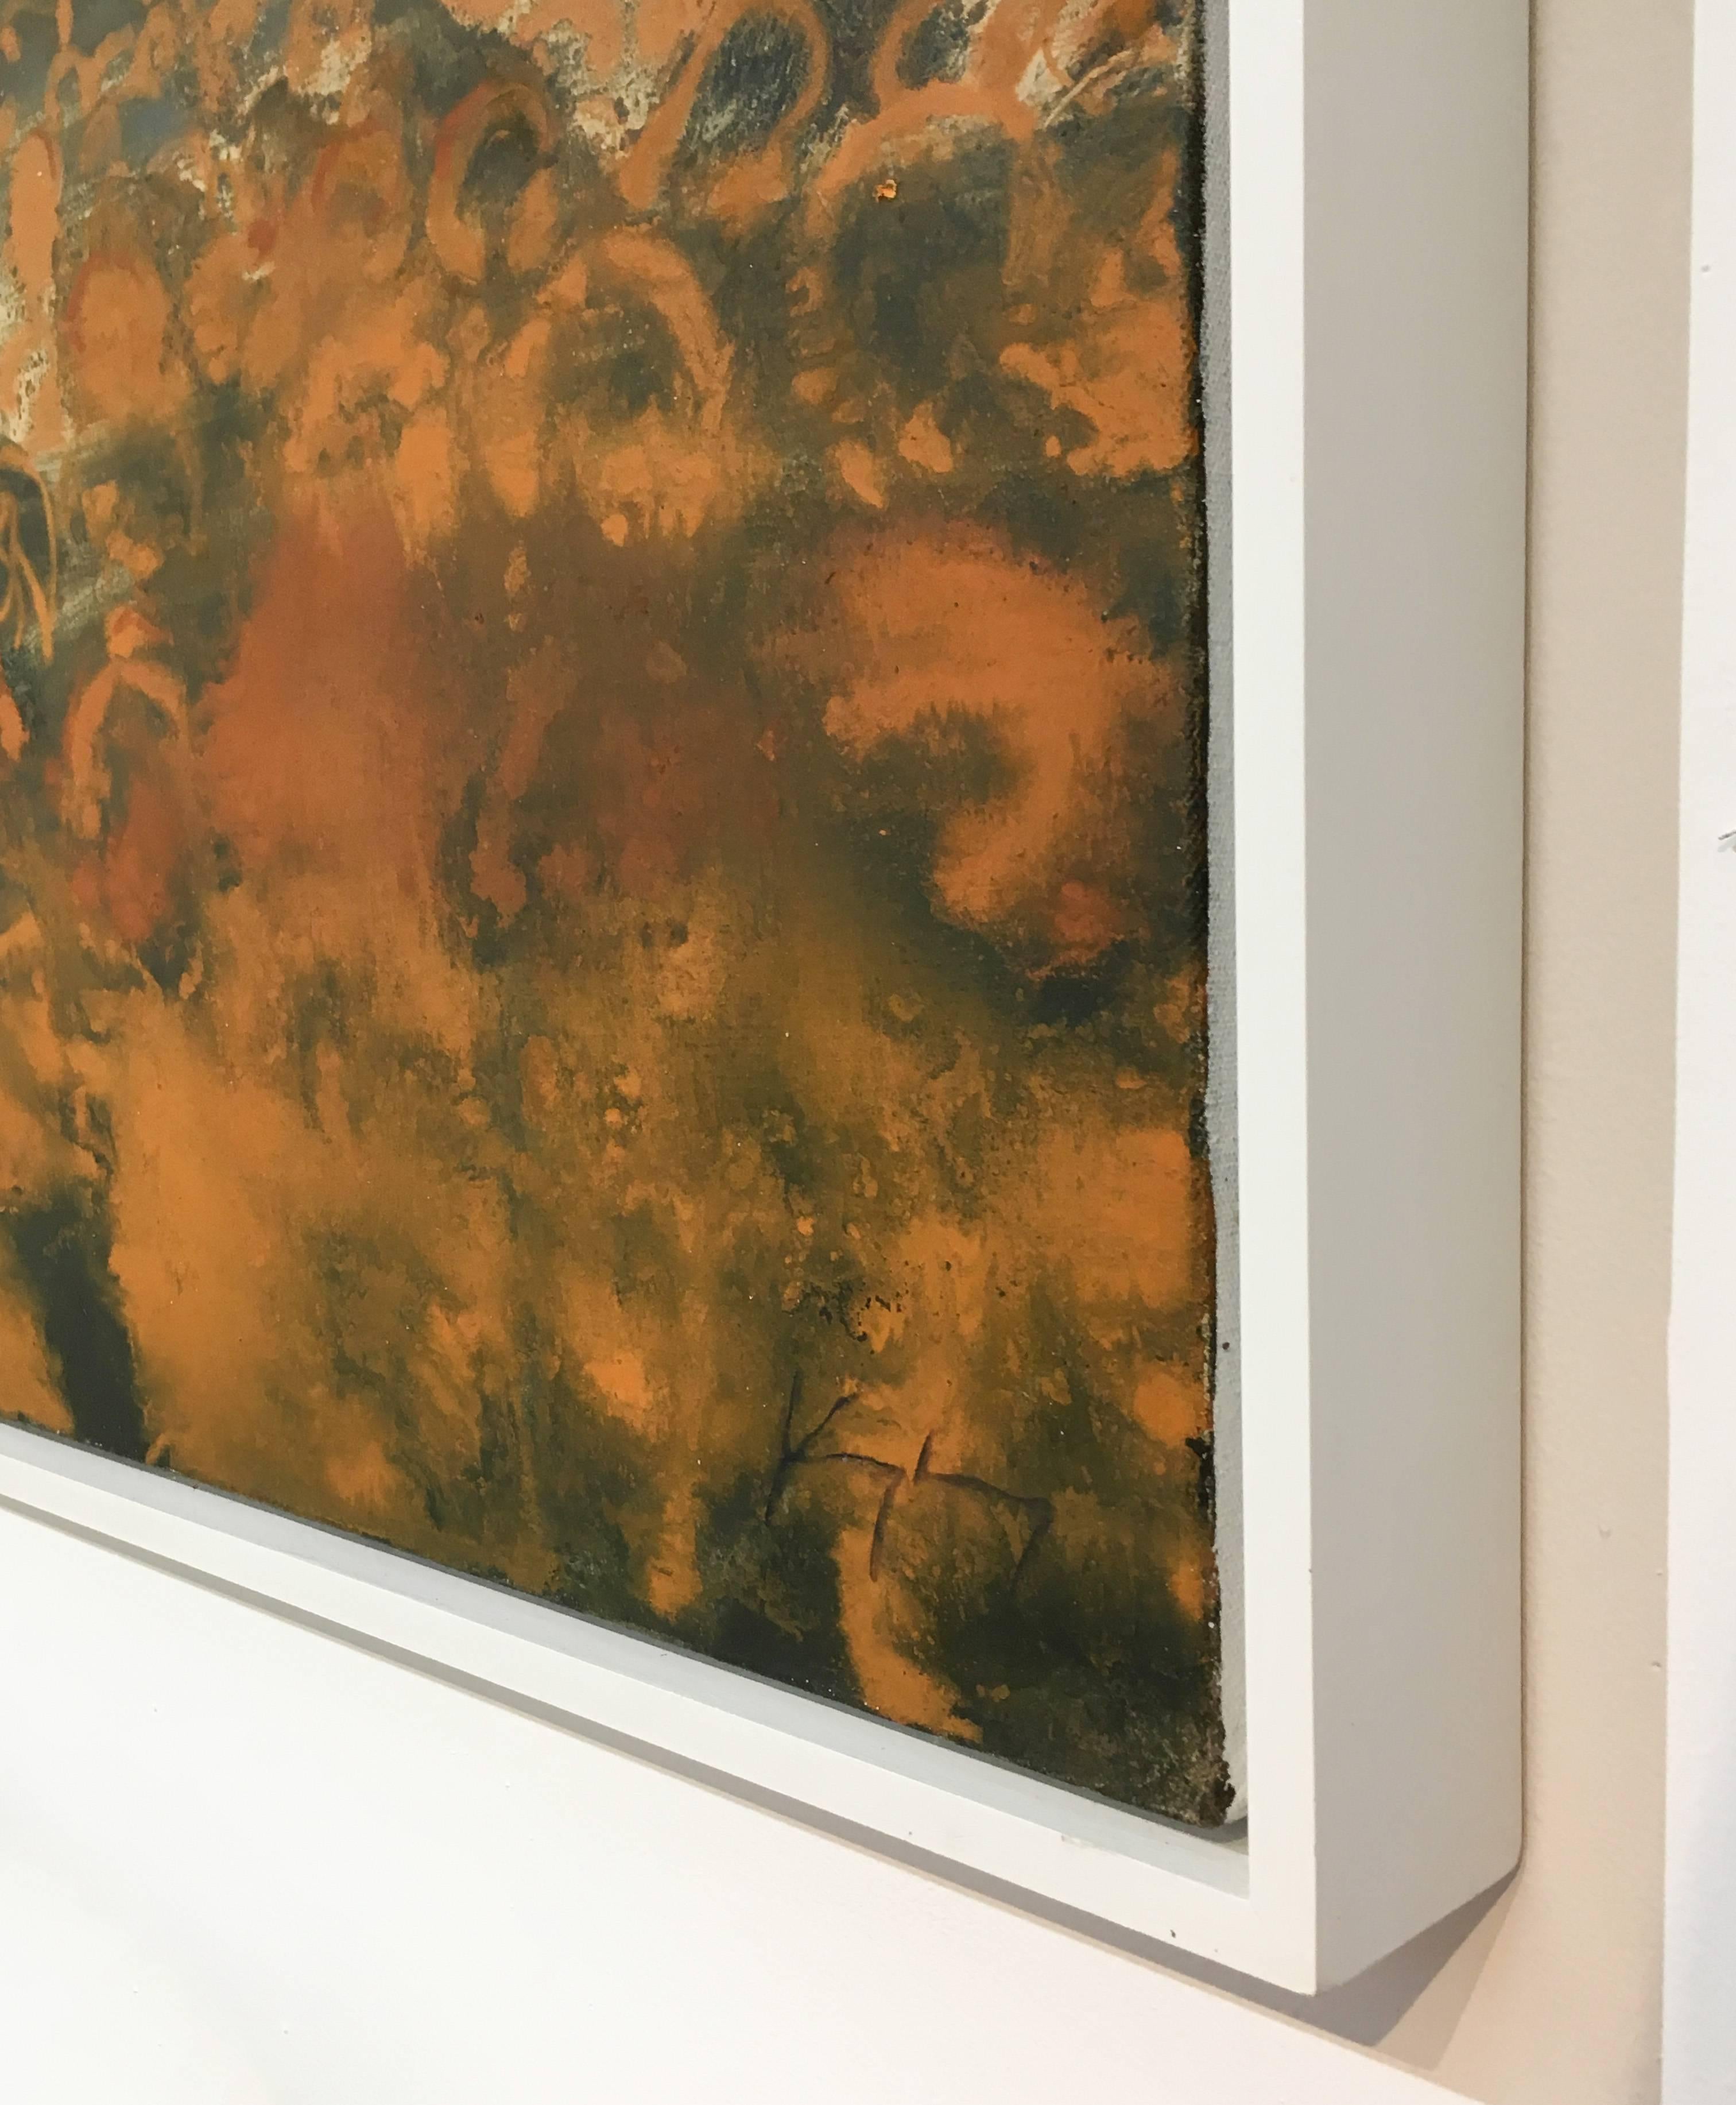 44 x 55 x 2 pouces
huile sur toile dans un cadre en bois blanc réalisé par l'artiste


Ce paysage contemporain de la vallée de l'Hudson représentant des citrouilles orange vif dans un champ a été peint par l'artiste David Konigsberg, basé à Hudson,